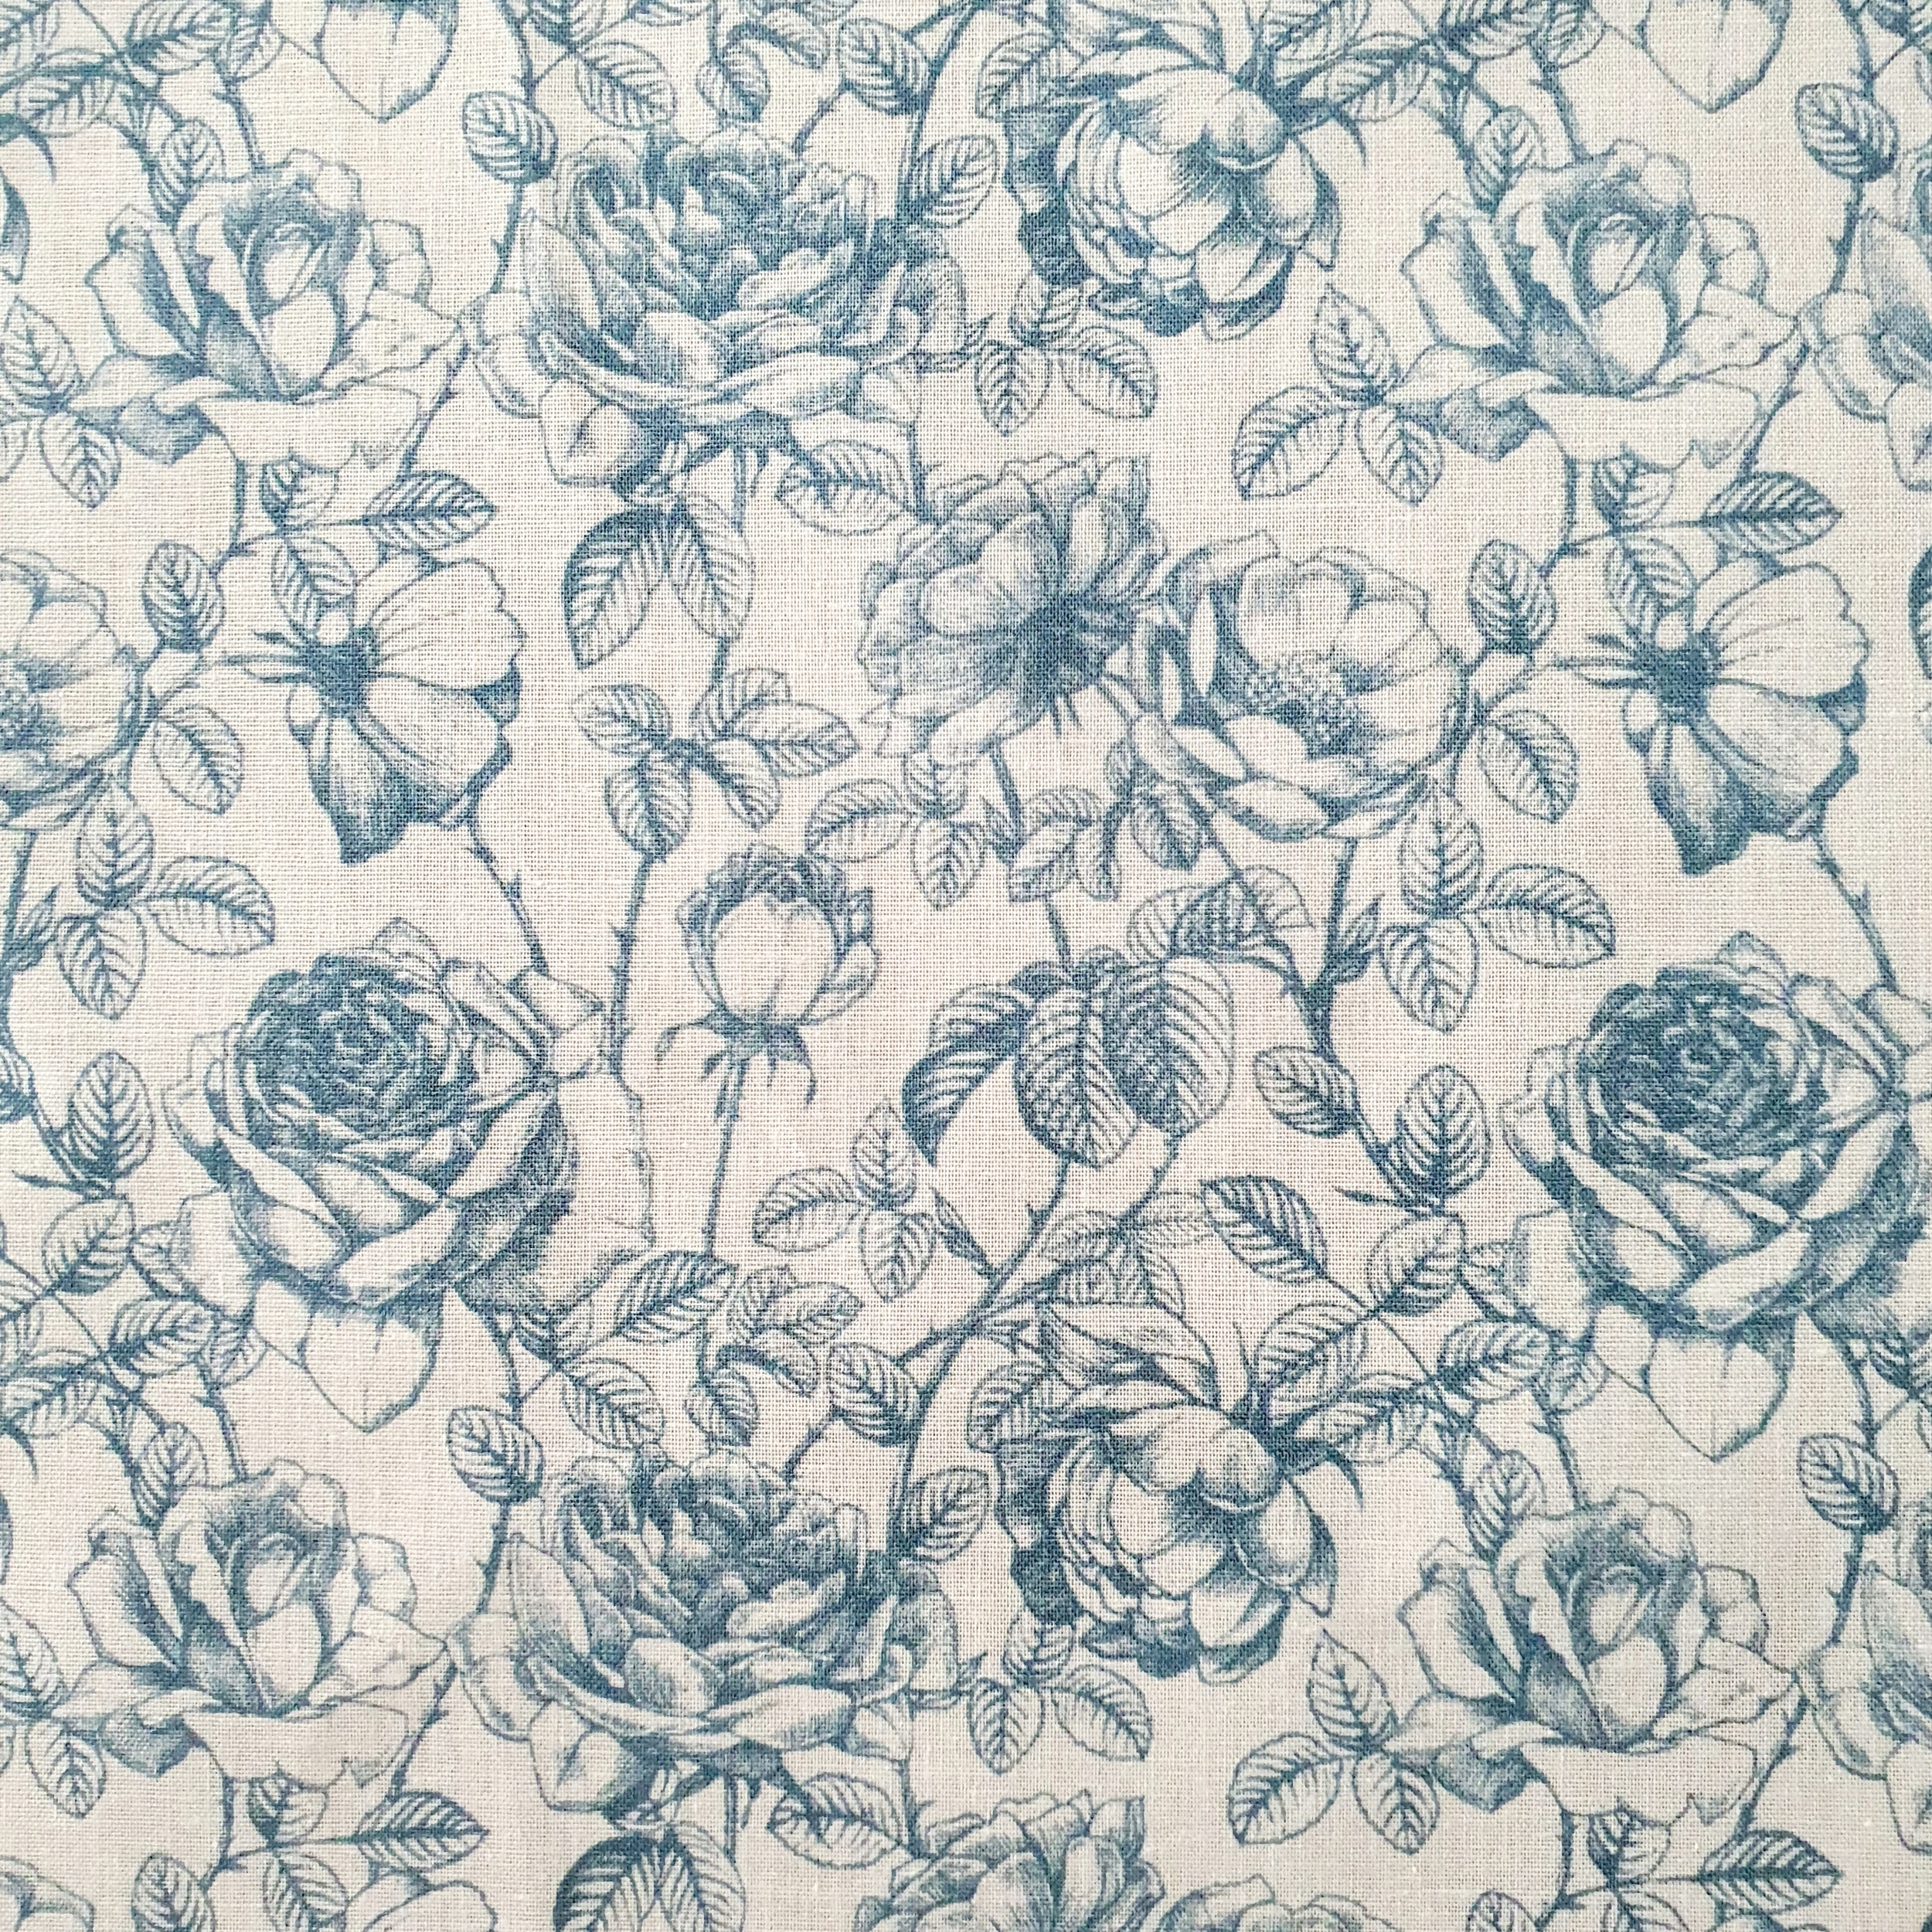 Tissu coton fleur bleue esprit toile de jouy